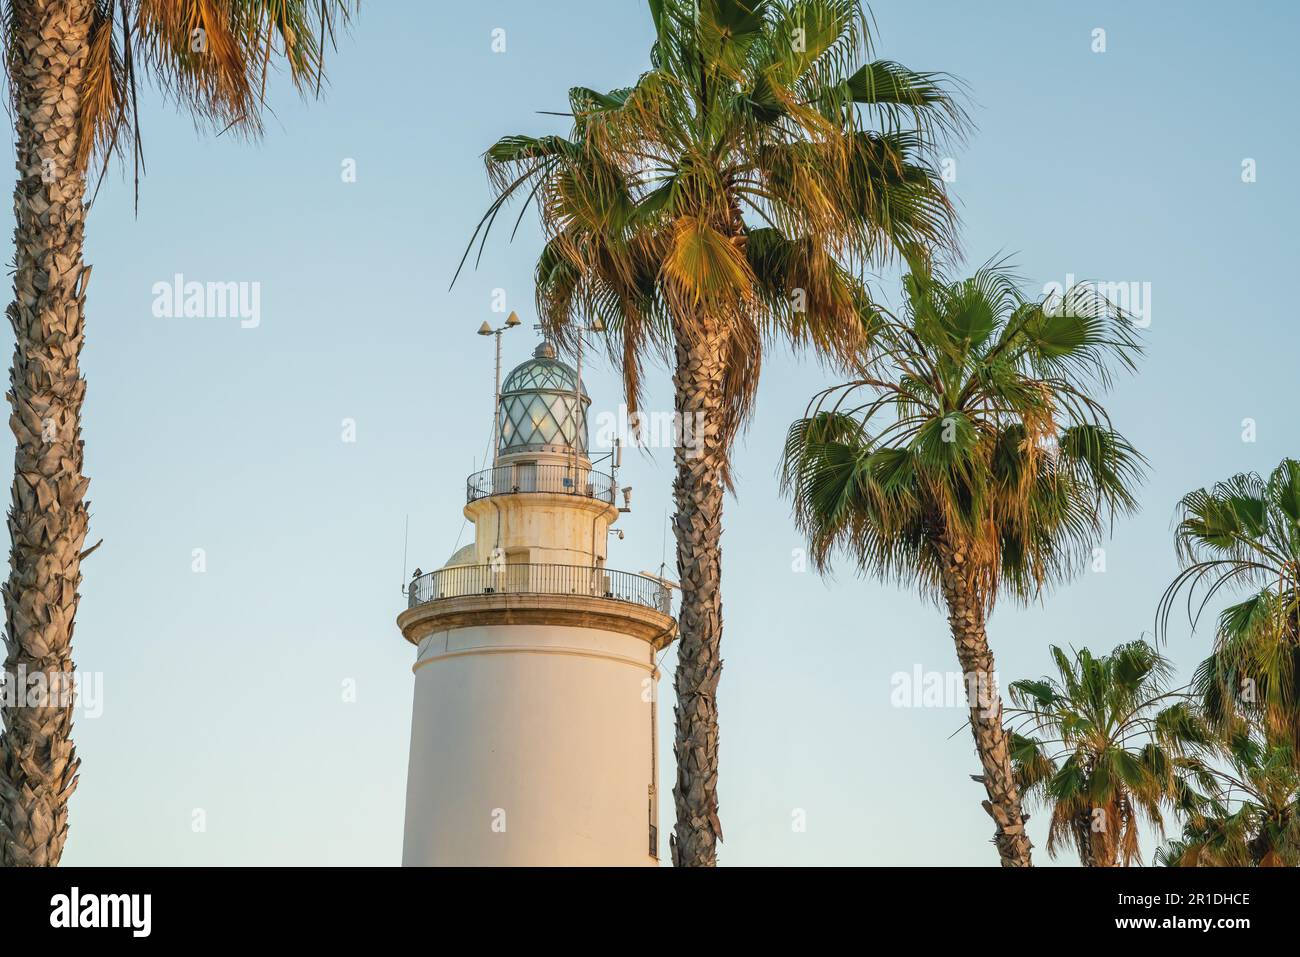 Faro di Malaga (la Farola) e palme - Malaga, Andalusia, Spagna Foto Stock